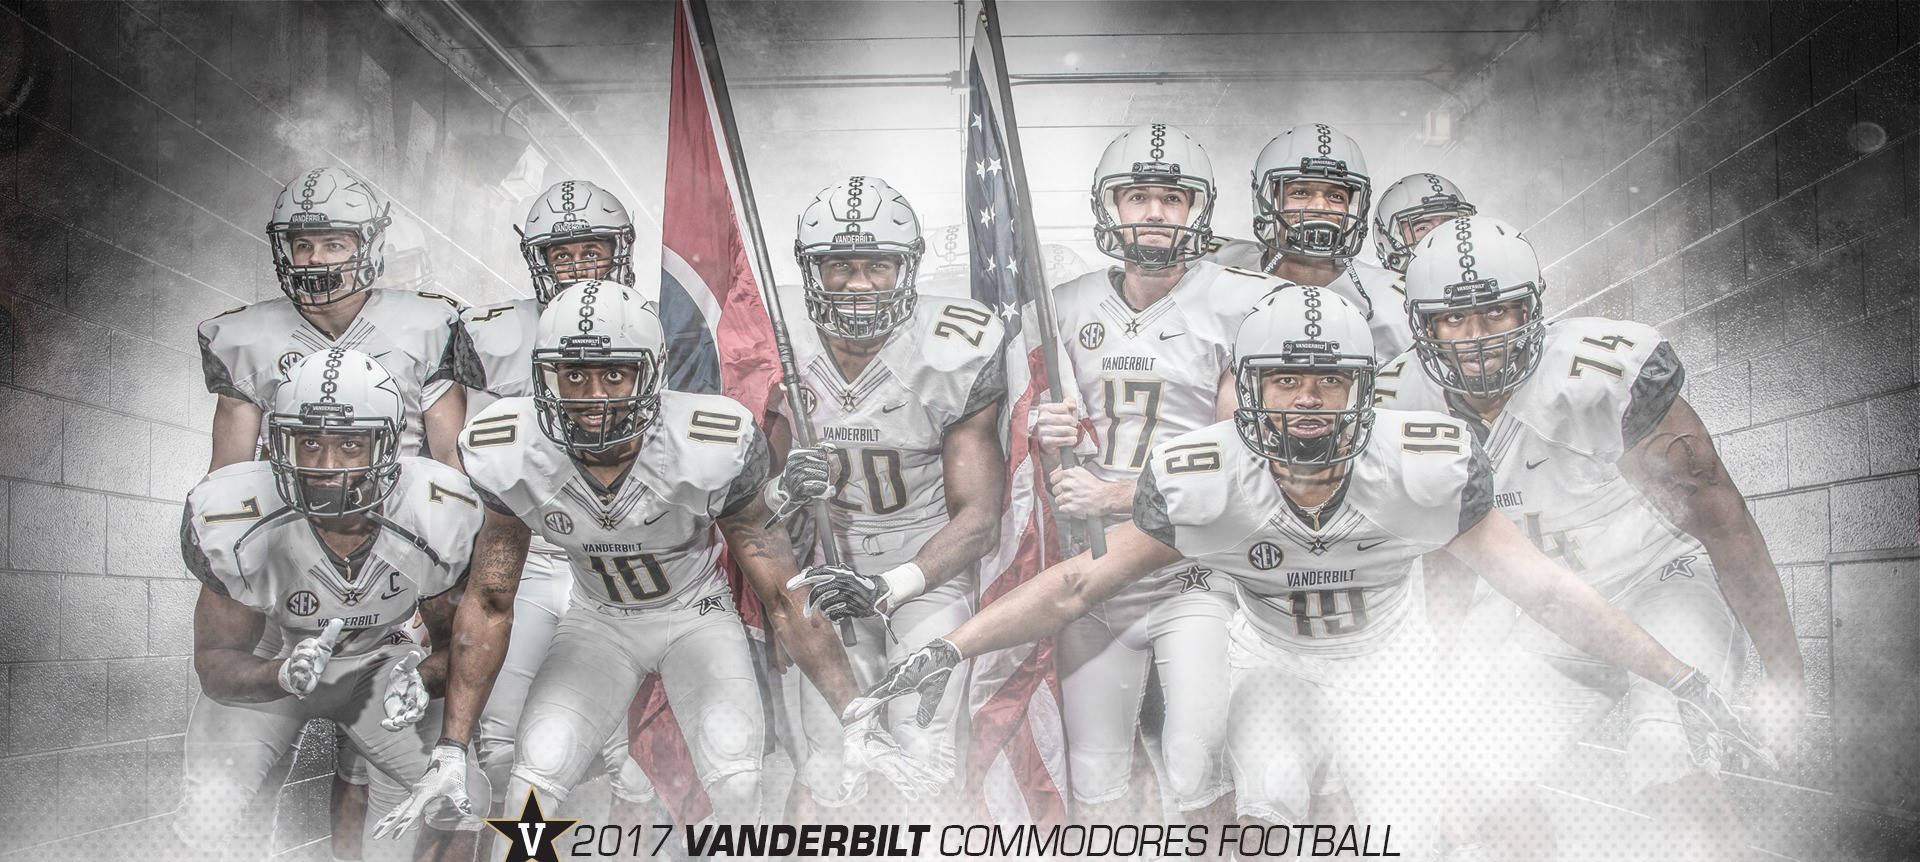 Vanderbilt University Commodores Football 2017 Wallpaper